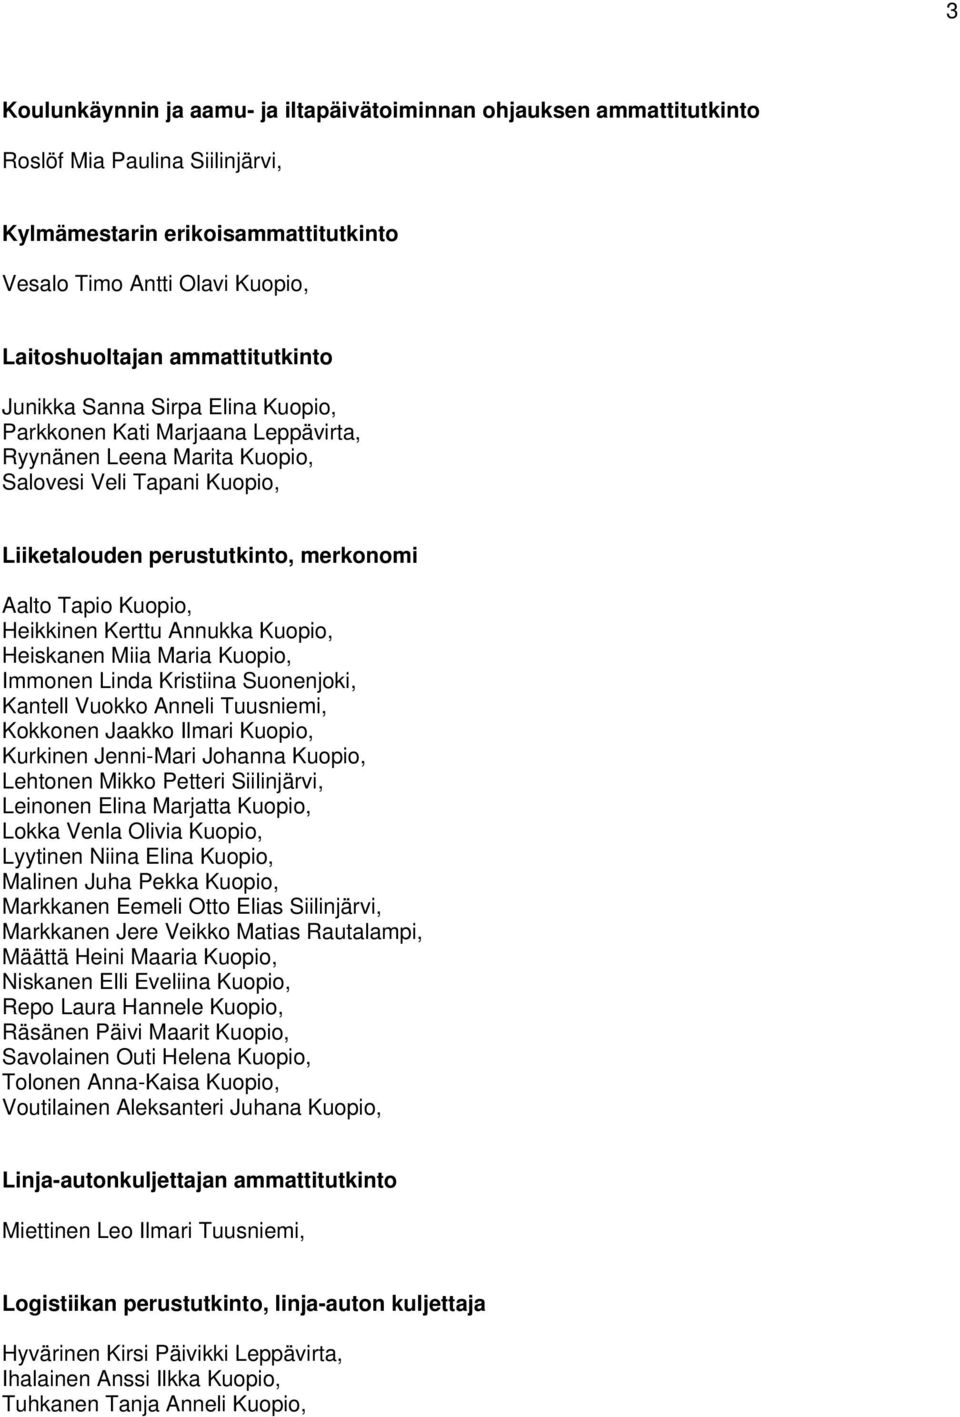 Kuopio, Heikkinen Kerttu Annukka Kuopio, Heiskanen Miia Maria Kuopio, Immonen Linda Kristiina Suonenjoki, Kantell Vuokko Anneli Tuusniemi, Kokkonen Jaakko Ilmari Kuopio, Kurkinen Jenni-Mari Johanna